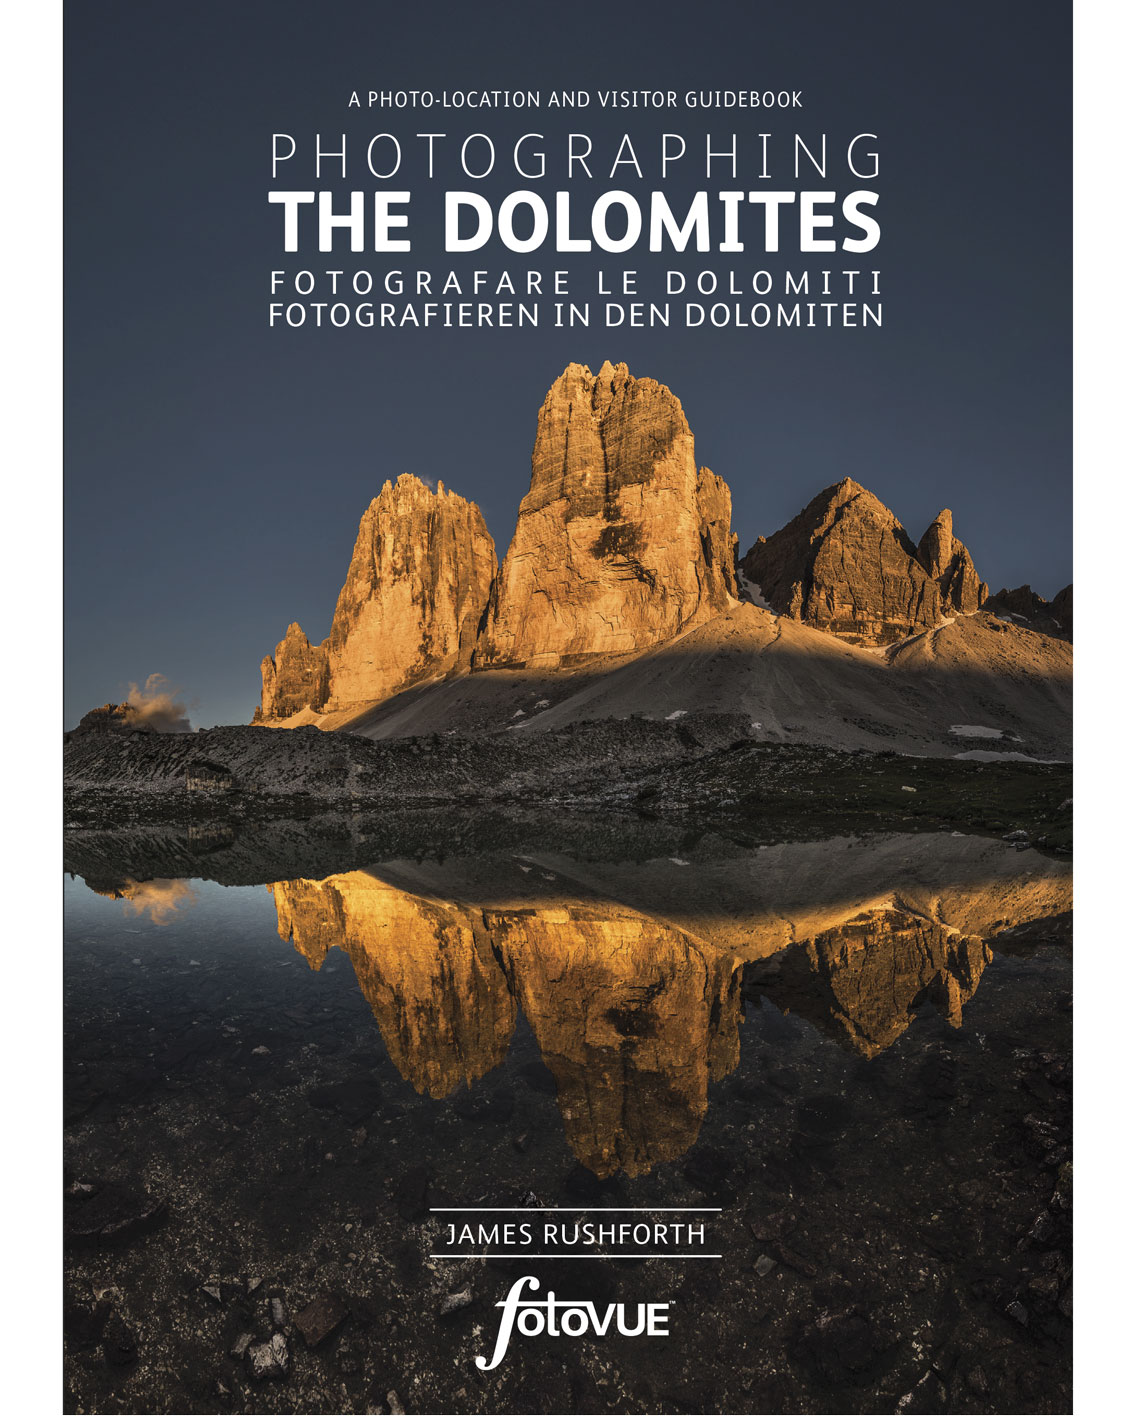 Online bestellen: Reisfotografiegids Photographing the Dolomites | Fotovue